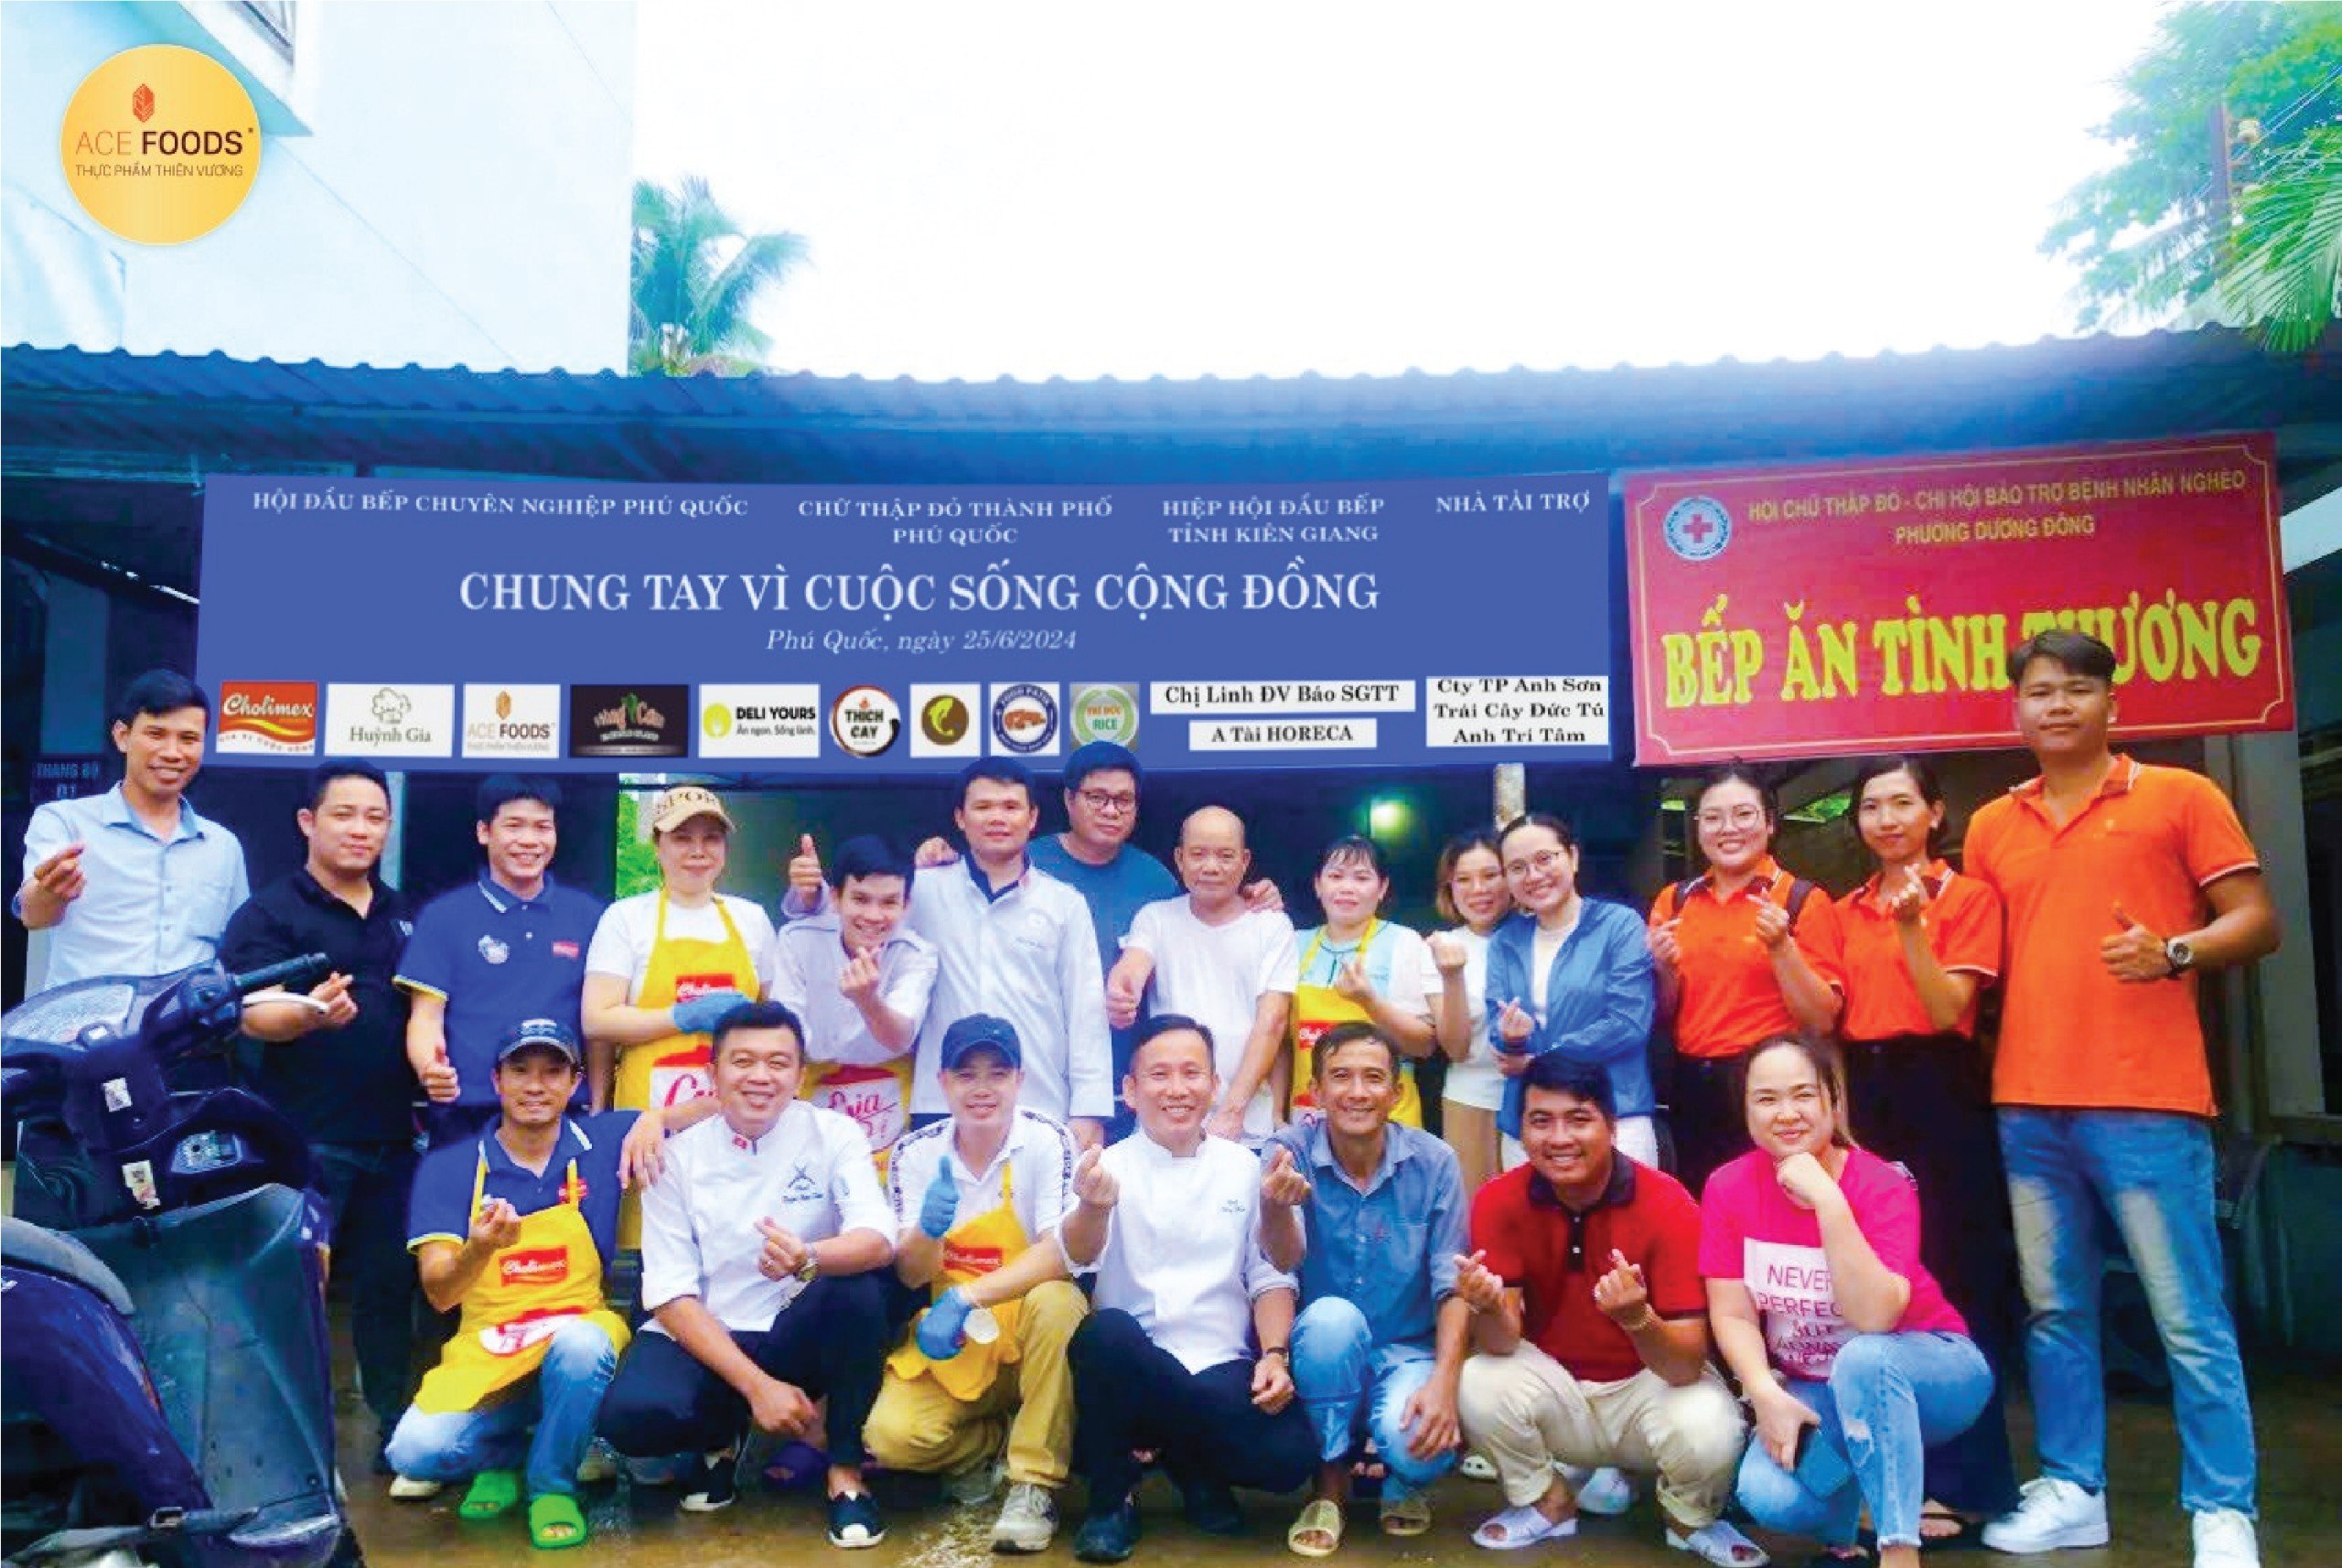 Thiên Vương ACE FOODS Phú Quốc tài trợ cho hoạt động thiện nguyện tại Bệnh viện đa khoa Phú Quốc